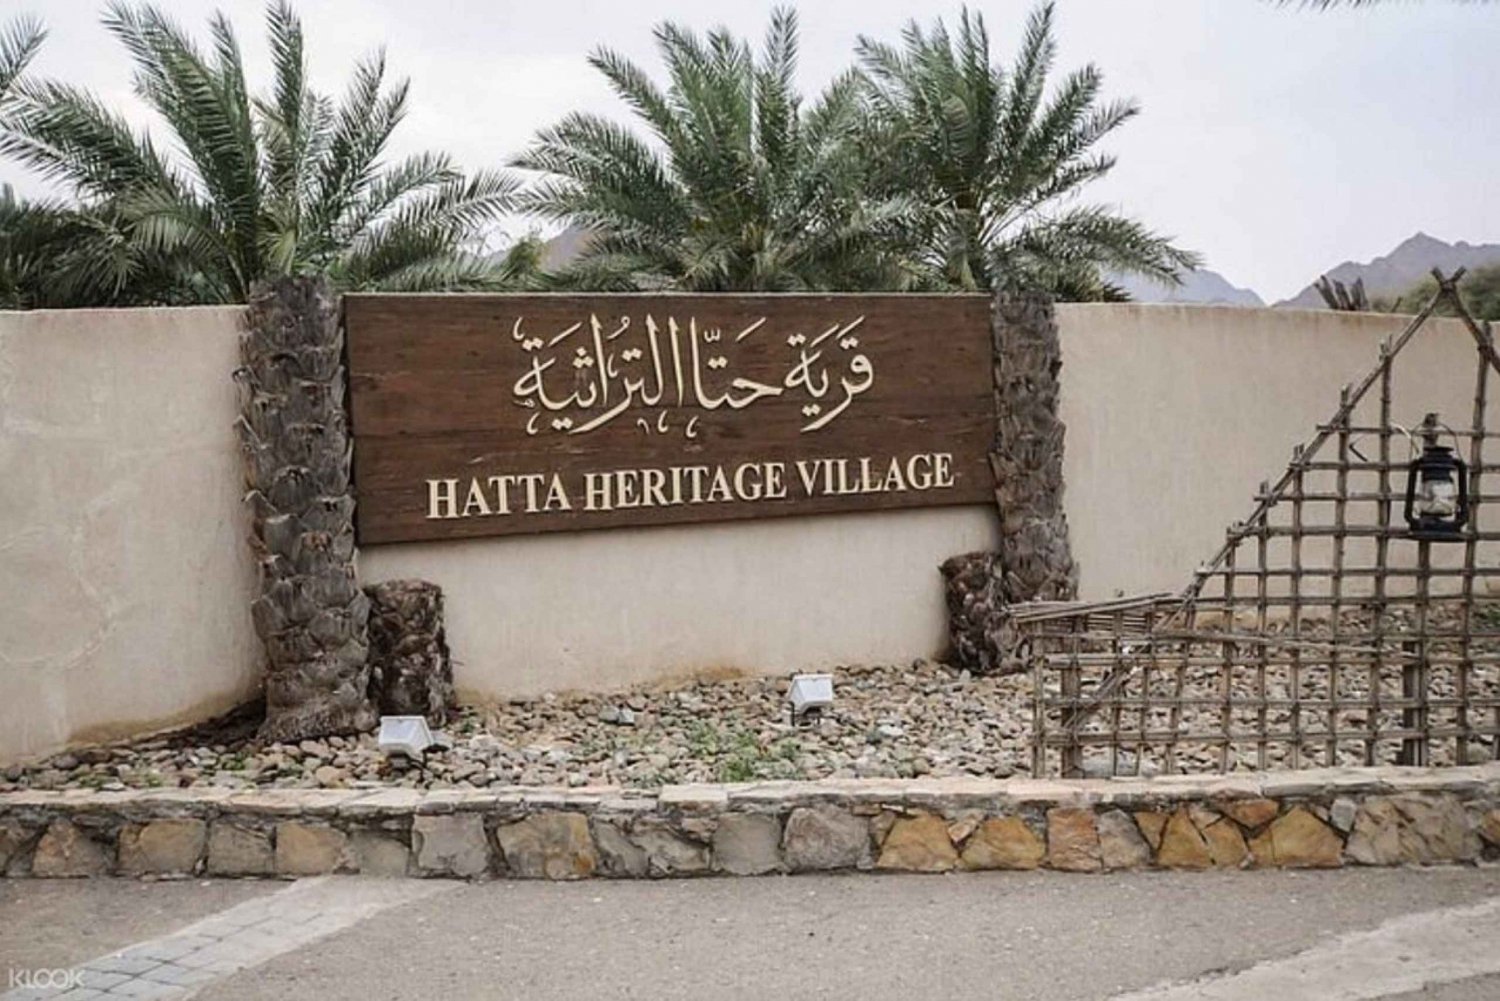 Dubai/Sharjah: Dagsutflykt till Hatta City och Hajarbergen